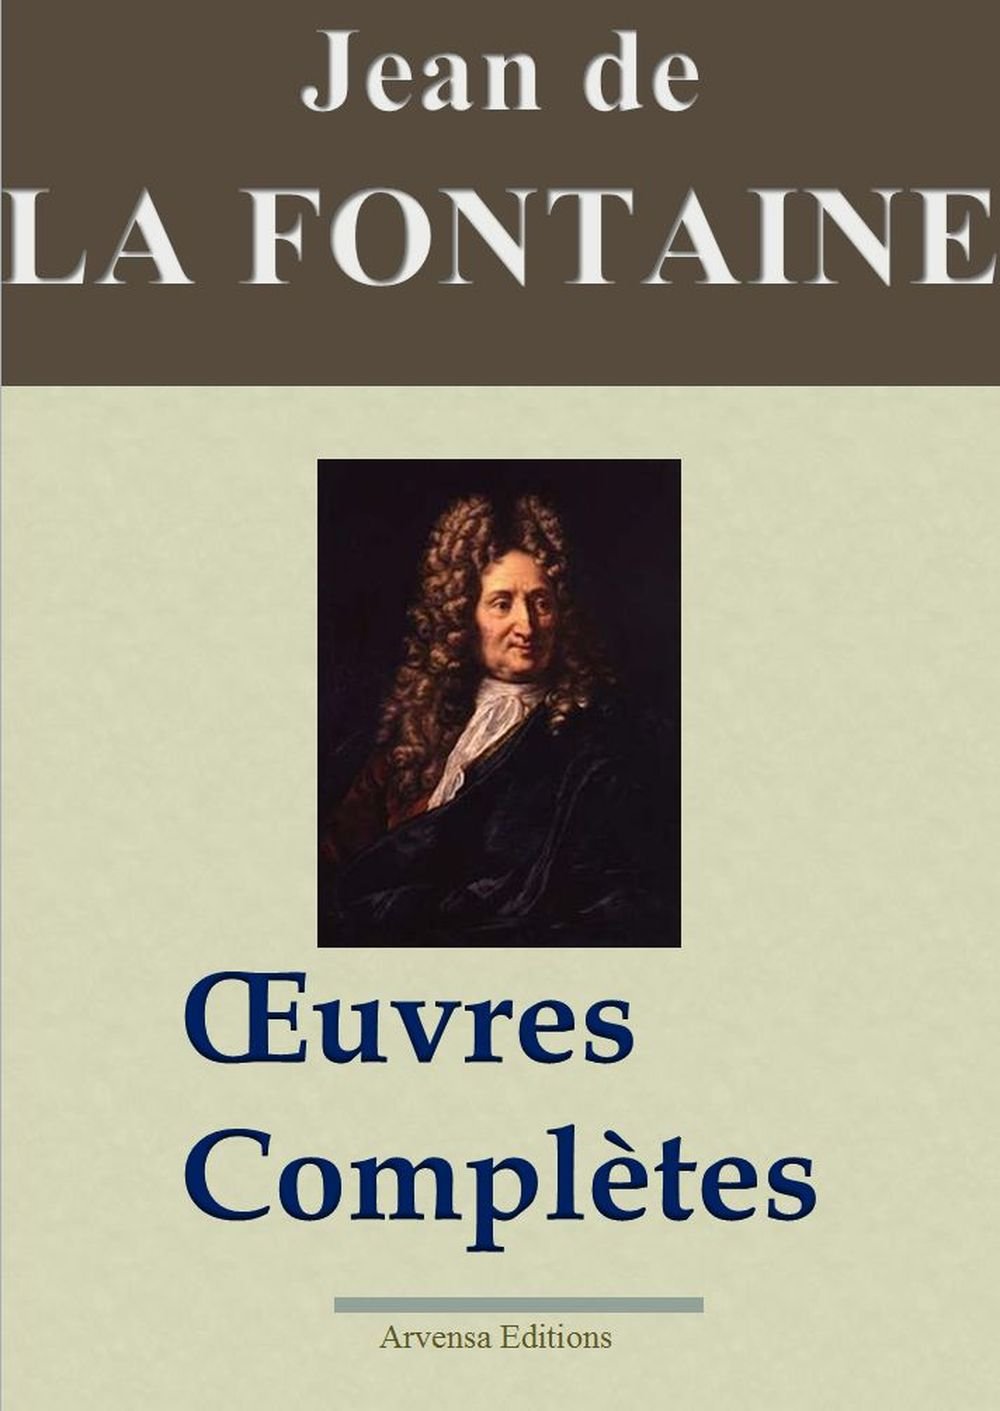 Jean de La Fontaine : Oeuvres complètes - Les 425 fables, contes et pièces de théâtre (Nouvelle édition enrichie) (French Edition)